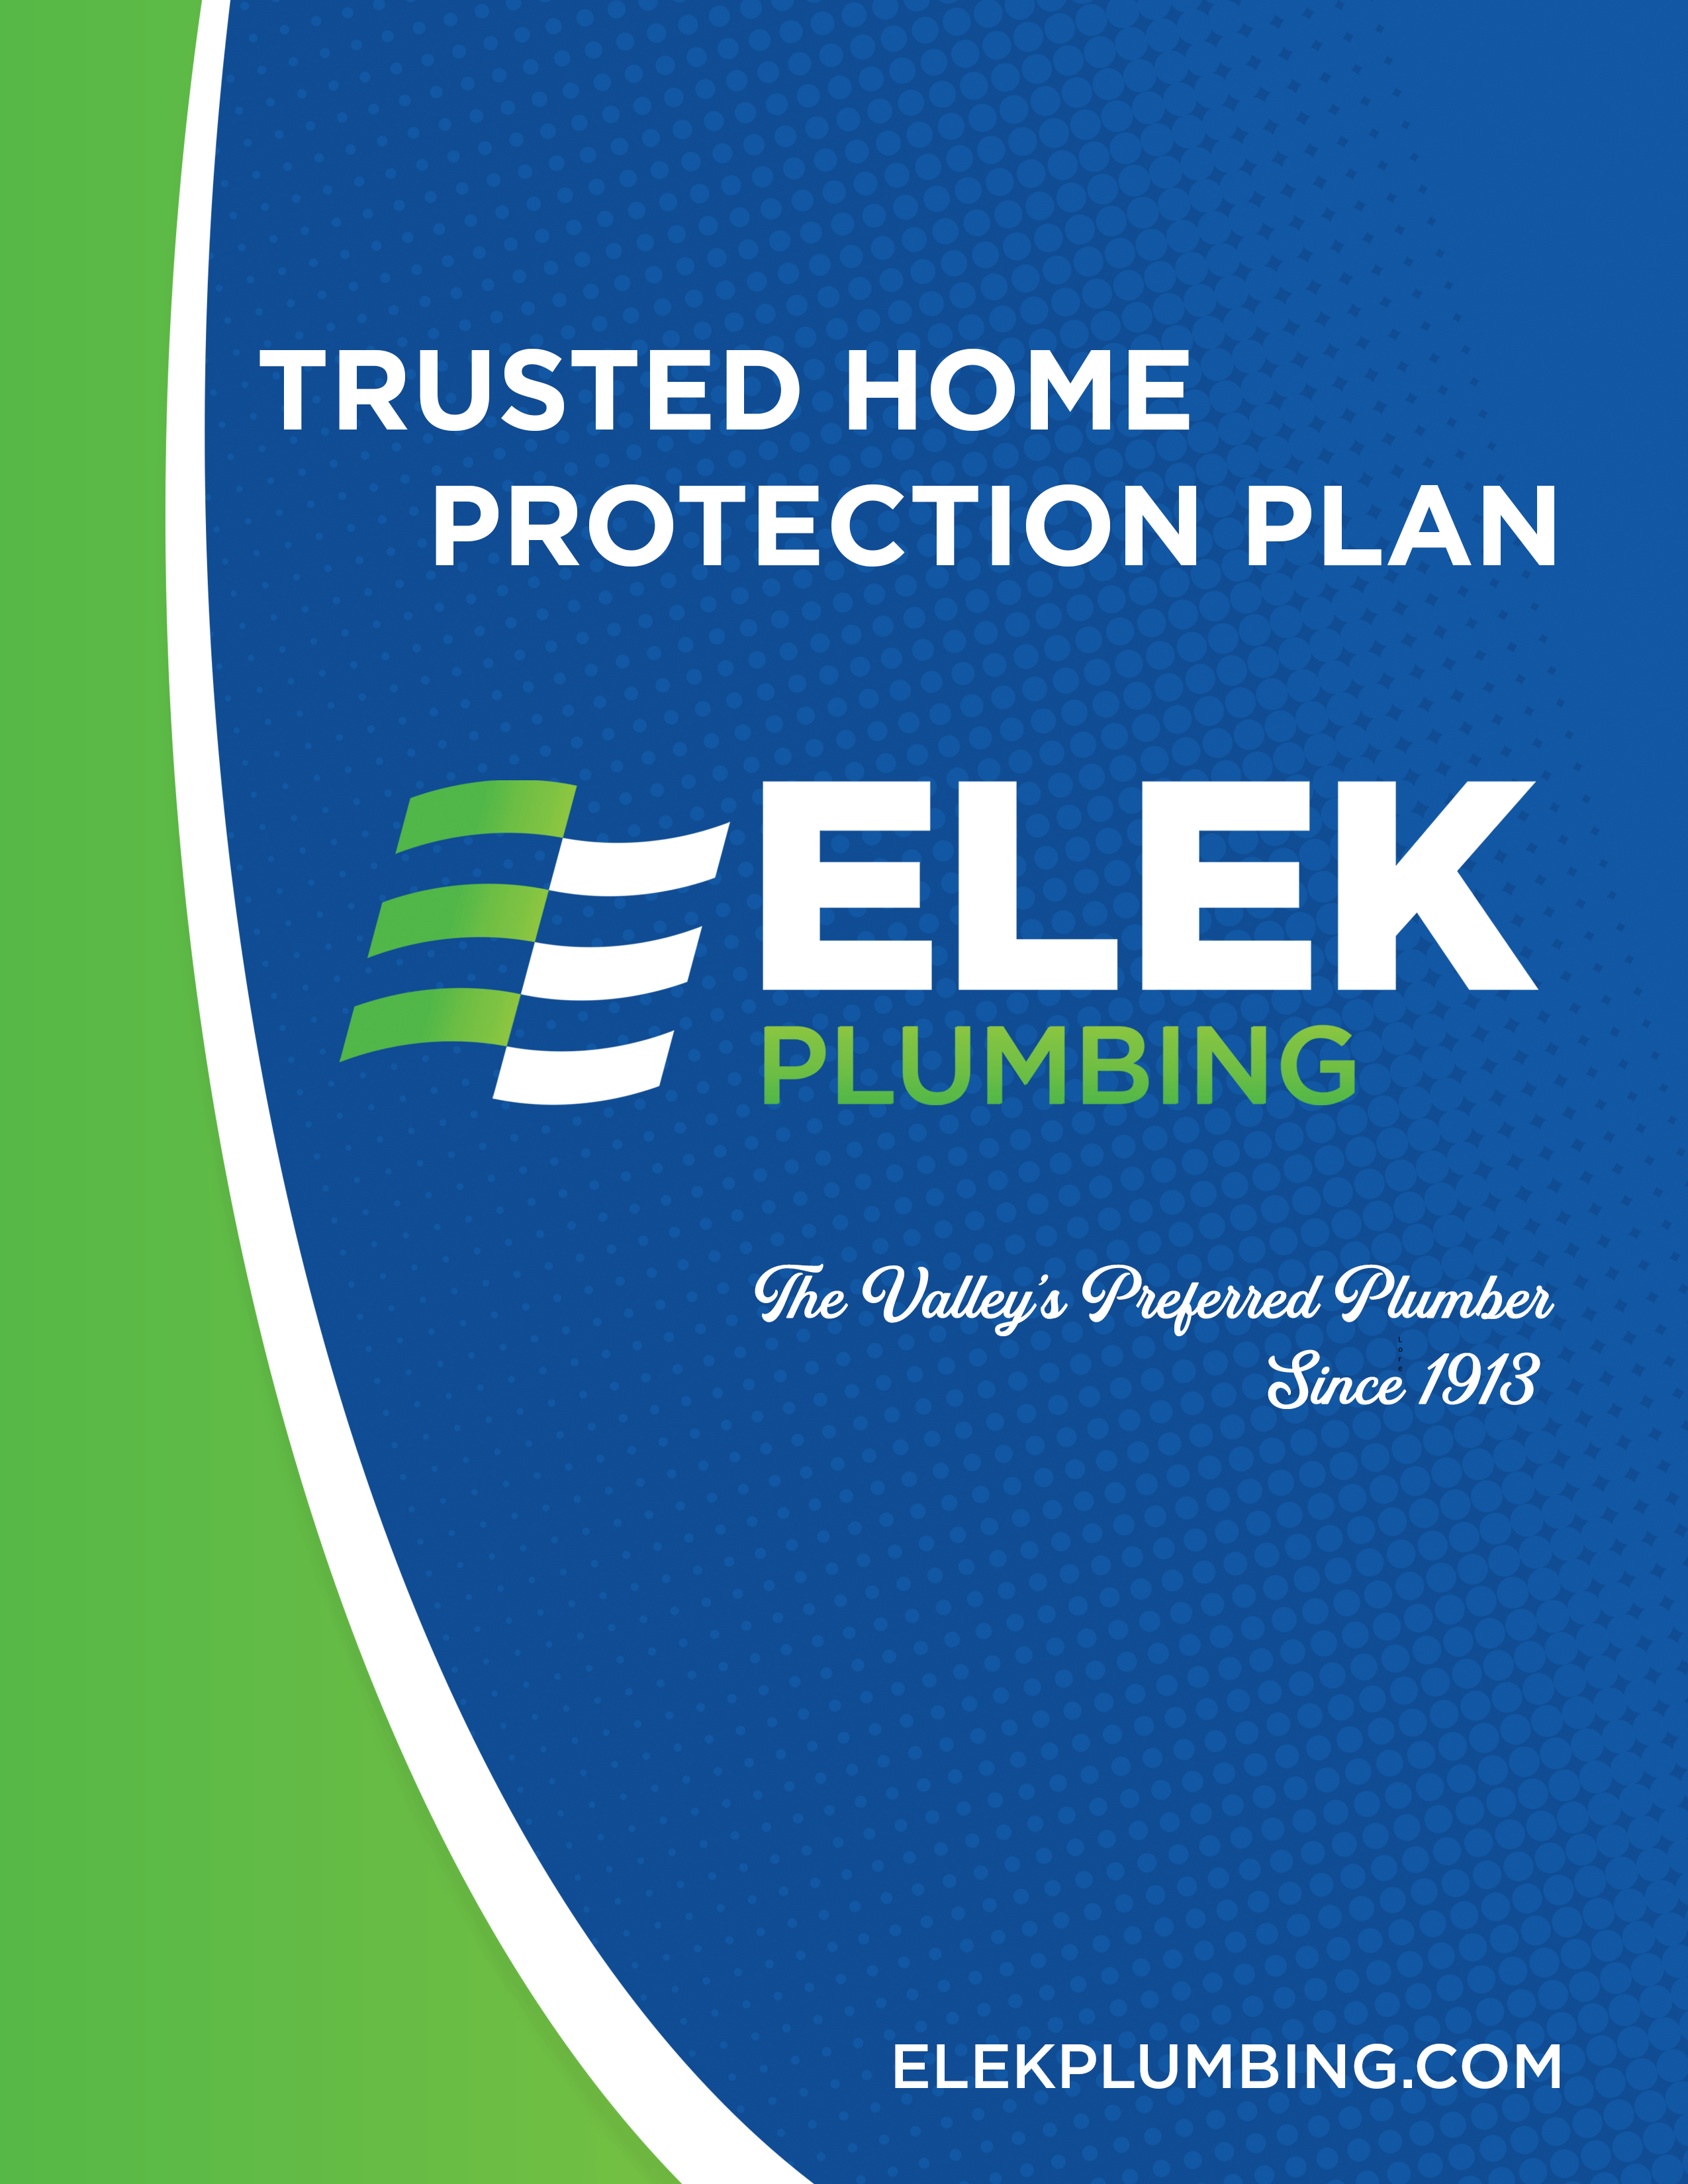 Elek Plumbing Protection Plan